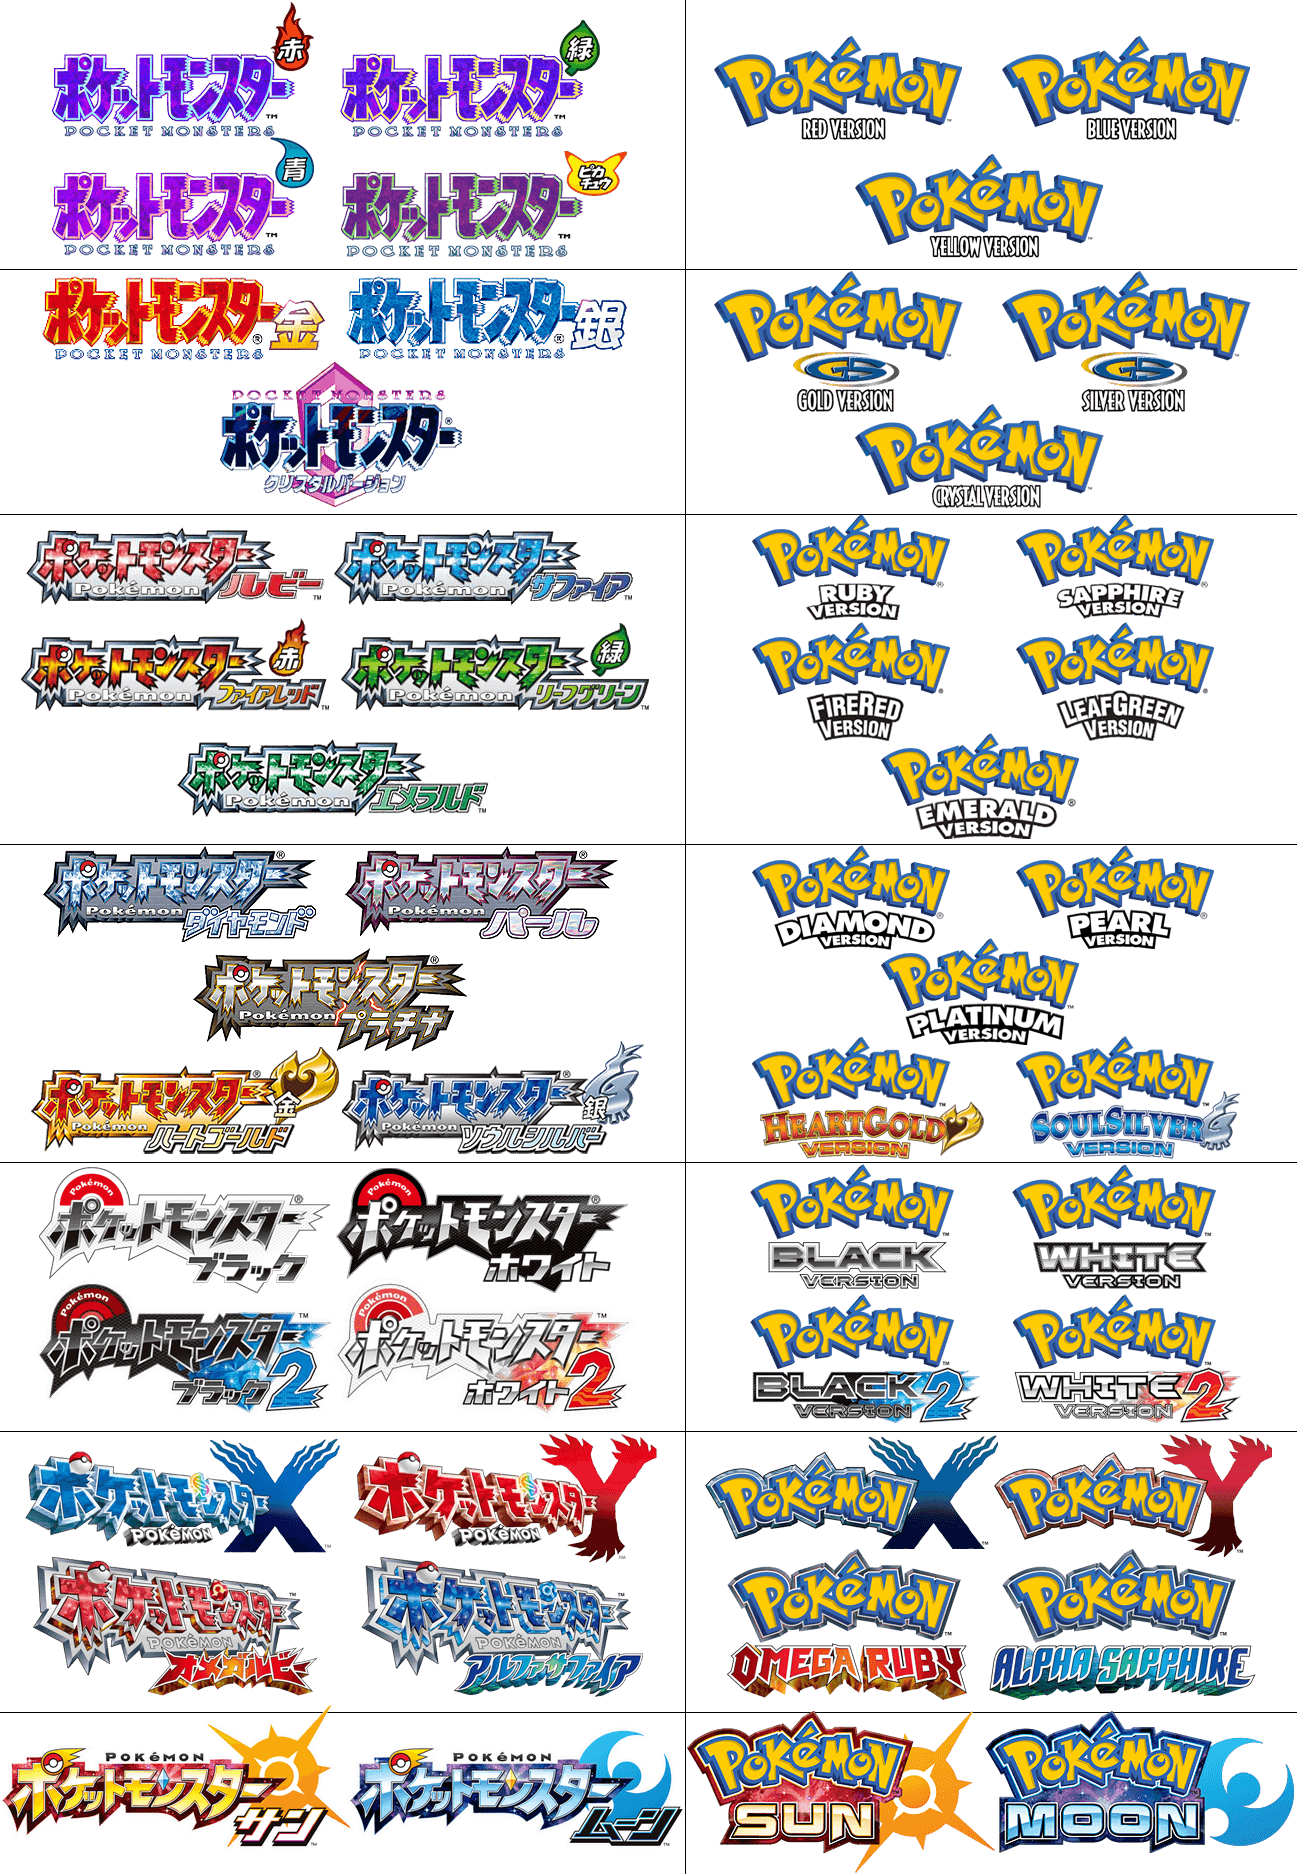 Pokeman Logo - Pokémon Logo Evolution | Pokémon | Know Your Meme